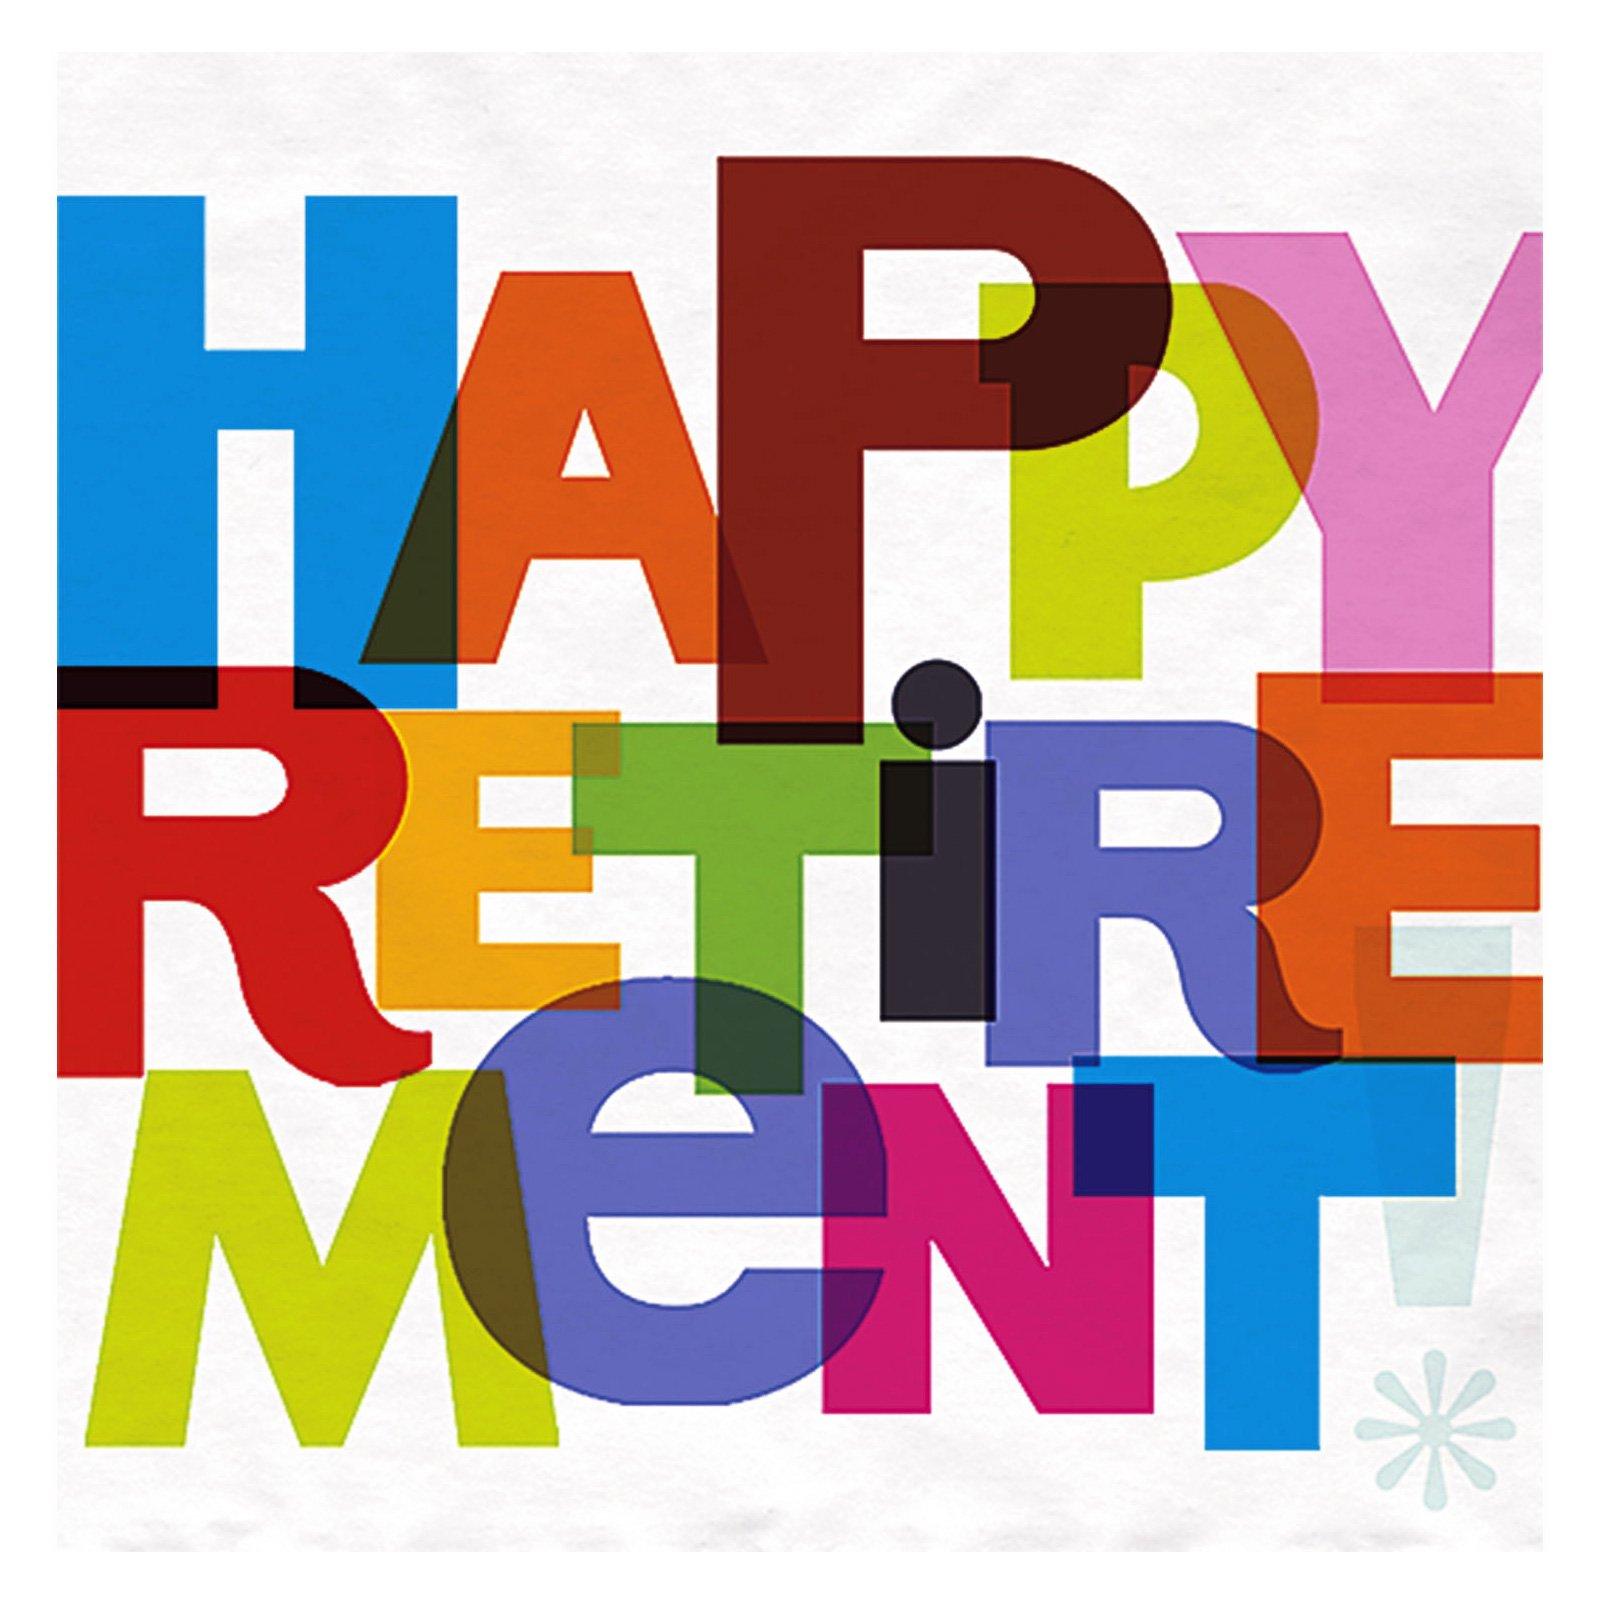 retirement clipart